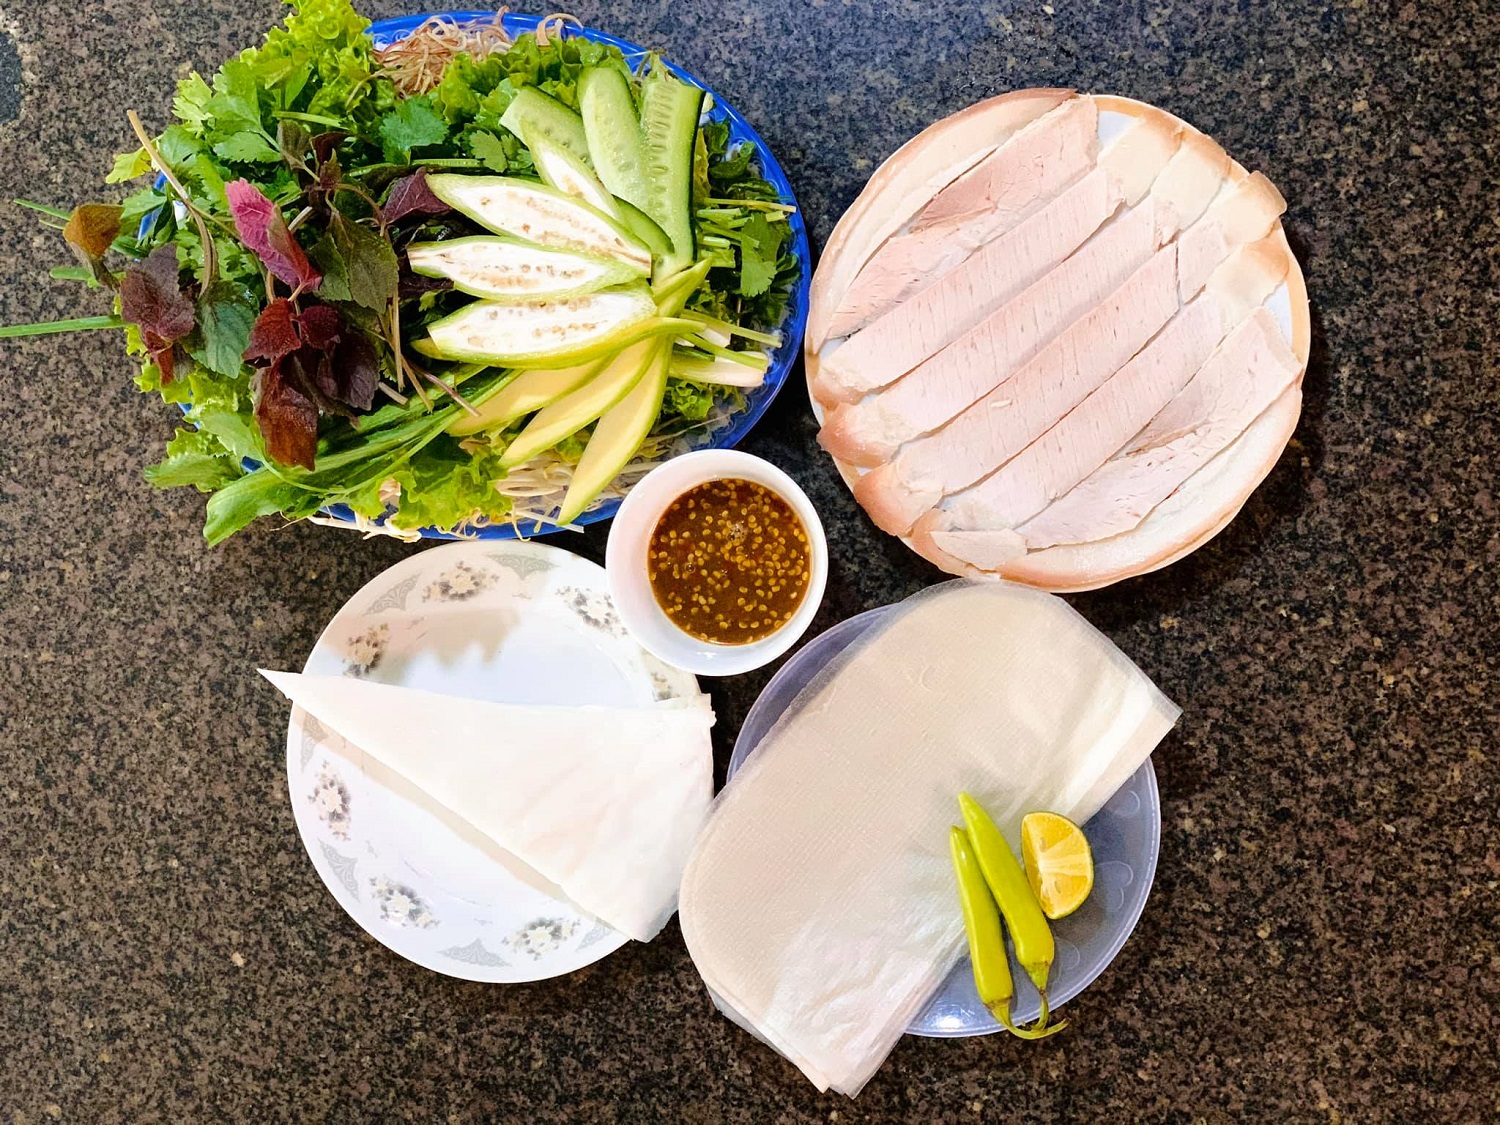 Thơm ngon món bánh tráng cuốn thịt heo Đà Nẵng - iVIVU.com